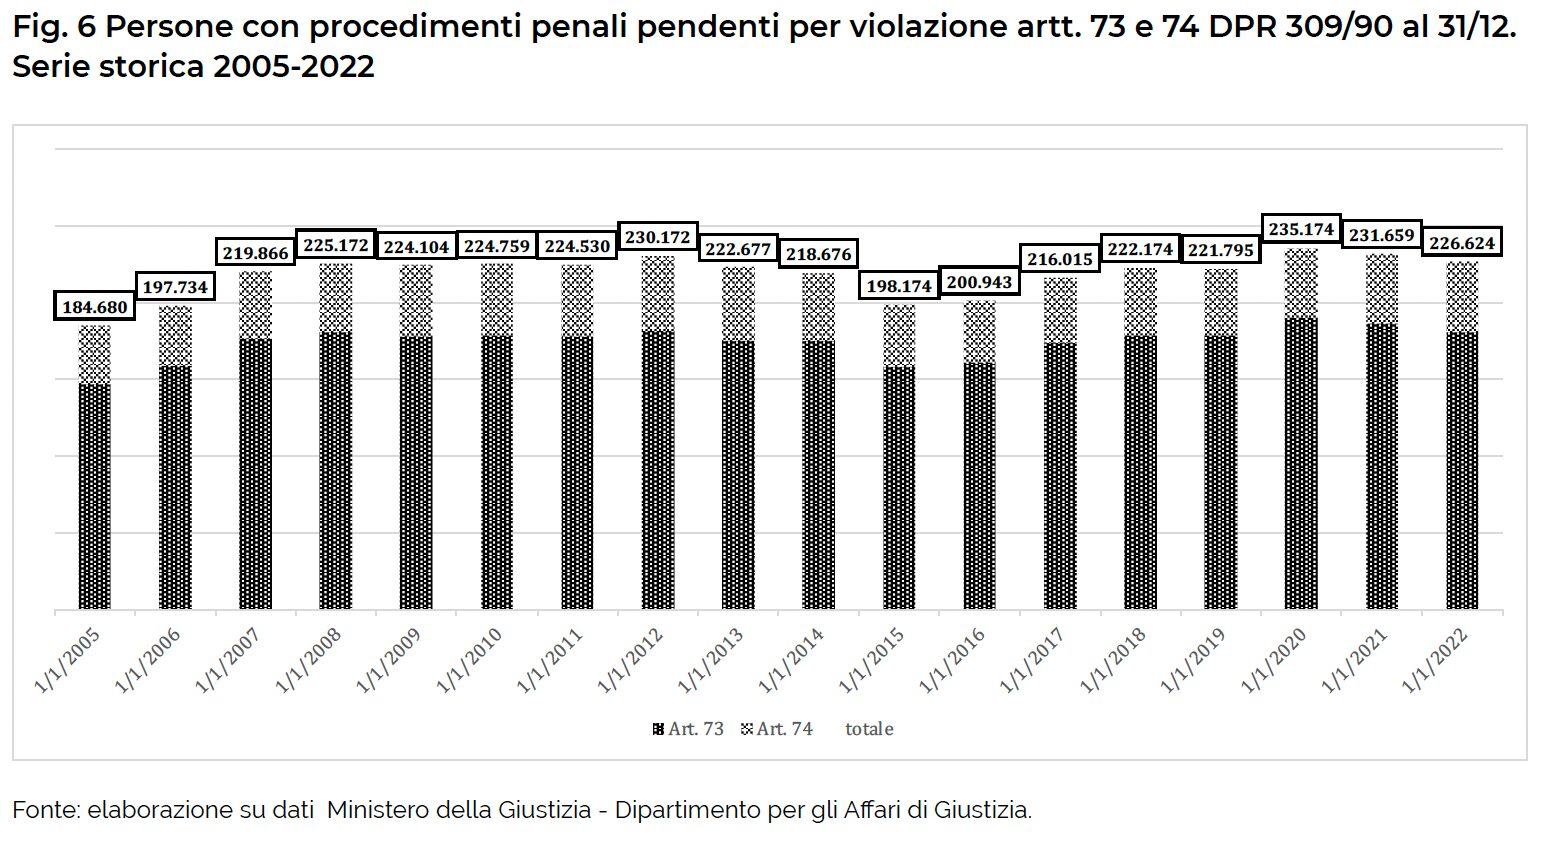 Fig. 6 Persone con procedimenti penali pendenti per violazione artt. 73 e 74 DPR 309/90 al 31/12. Serie storica 2005-2022